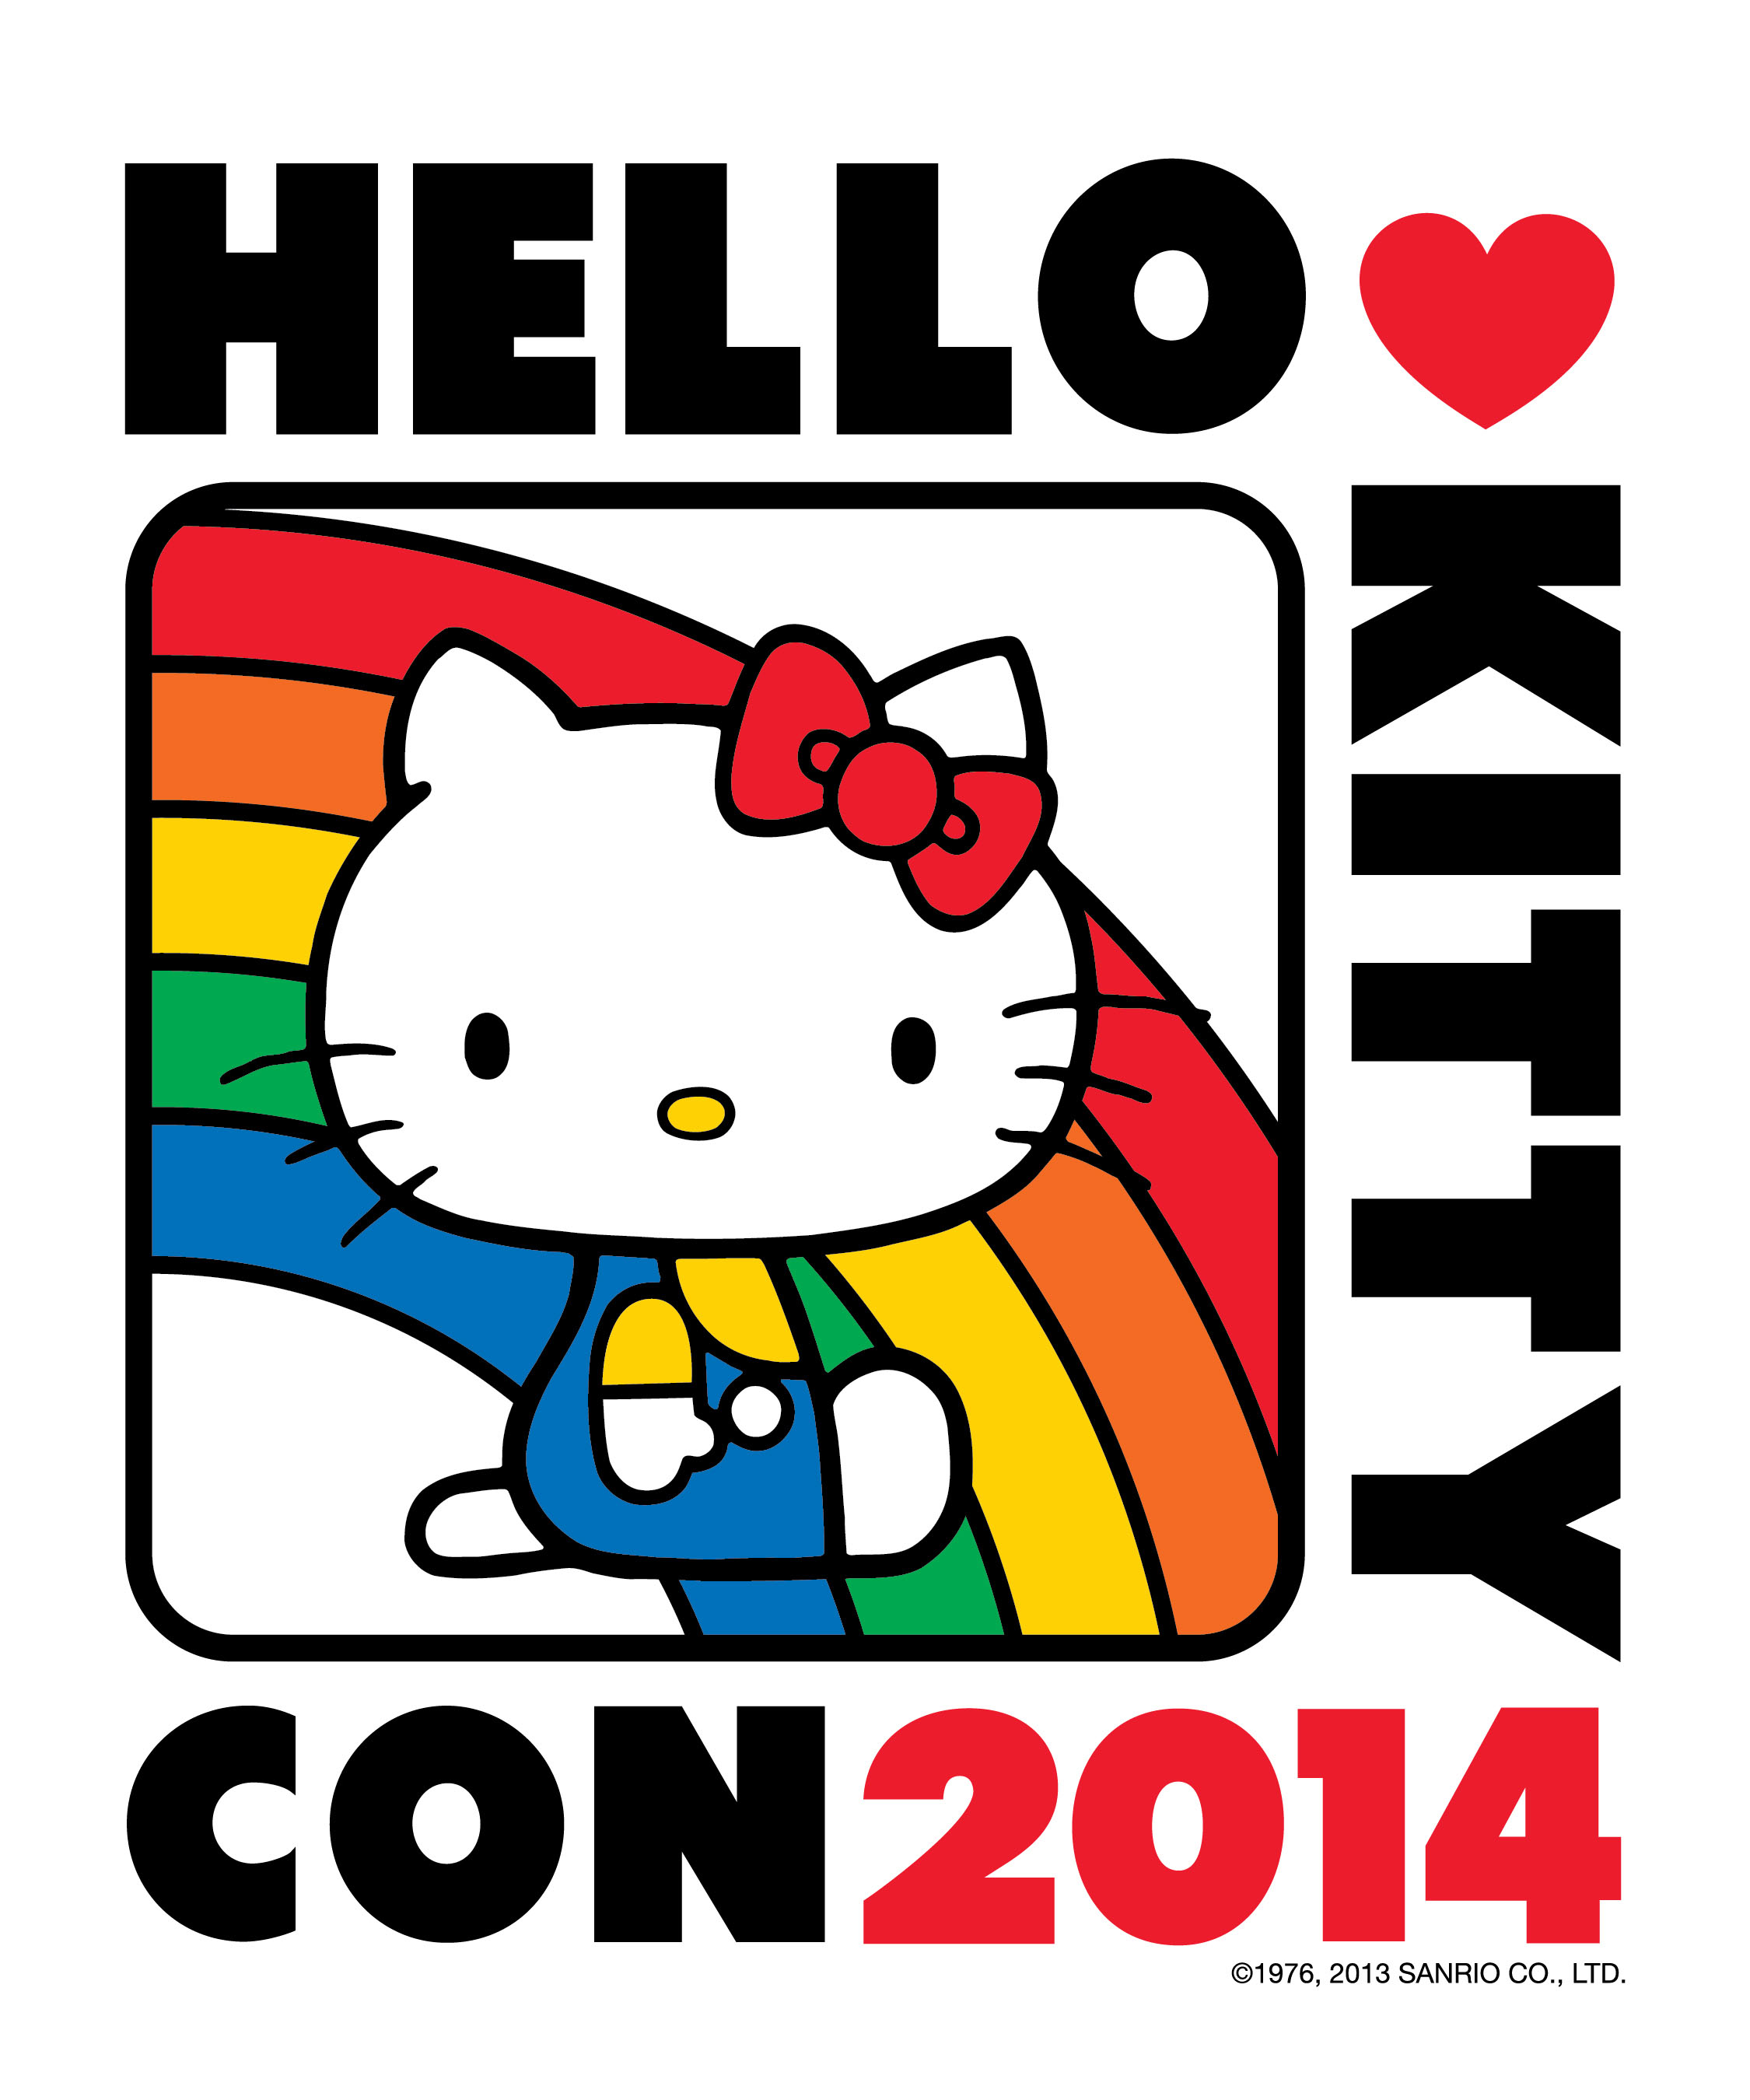 Move Over Comic Con Make Room For Hello Kitty Con